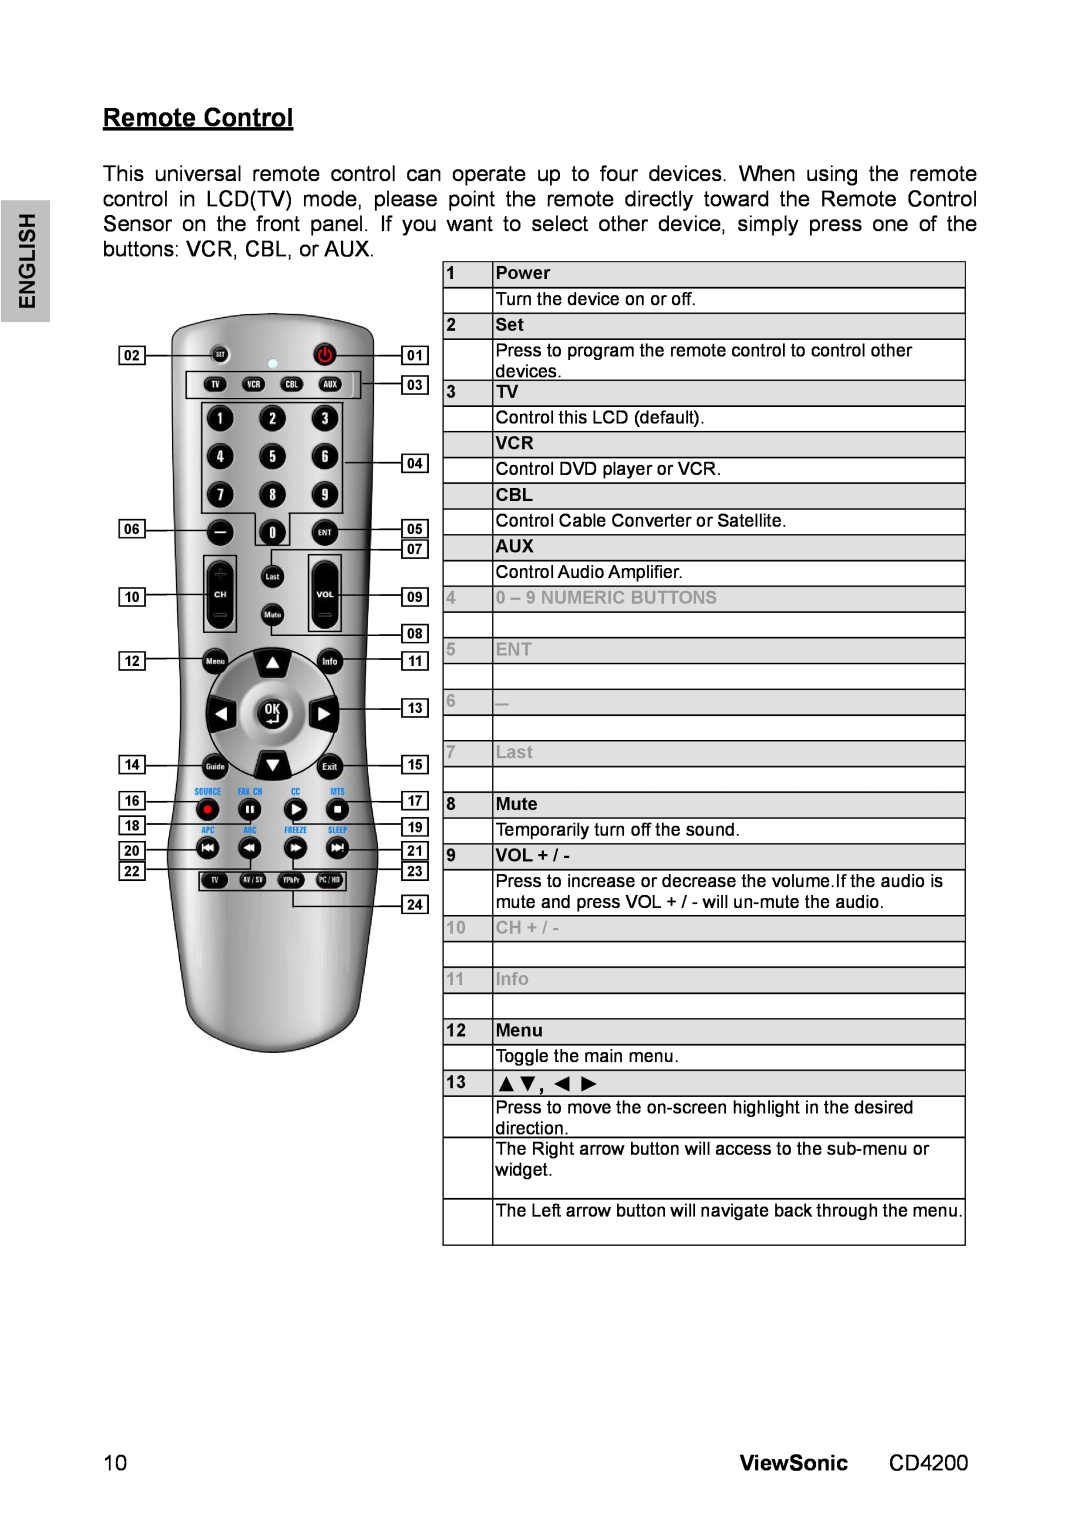 ViewSonic CD4200 manual Remote Control, English, ViewSonic, Power, Mute, Vol +, Menu 